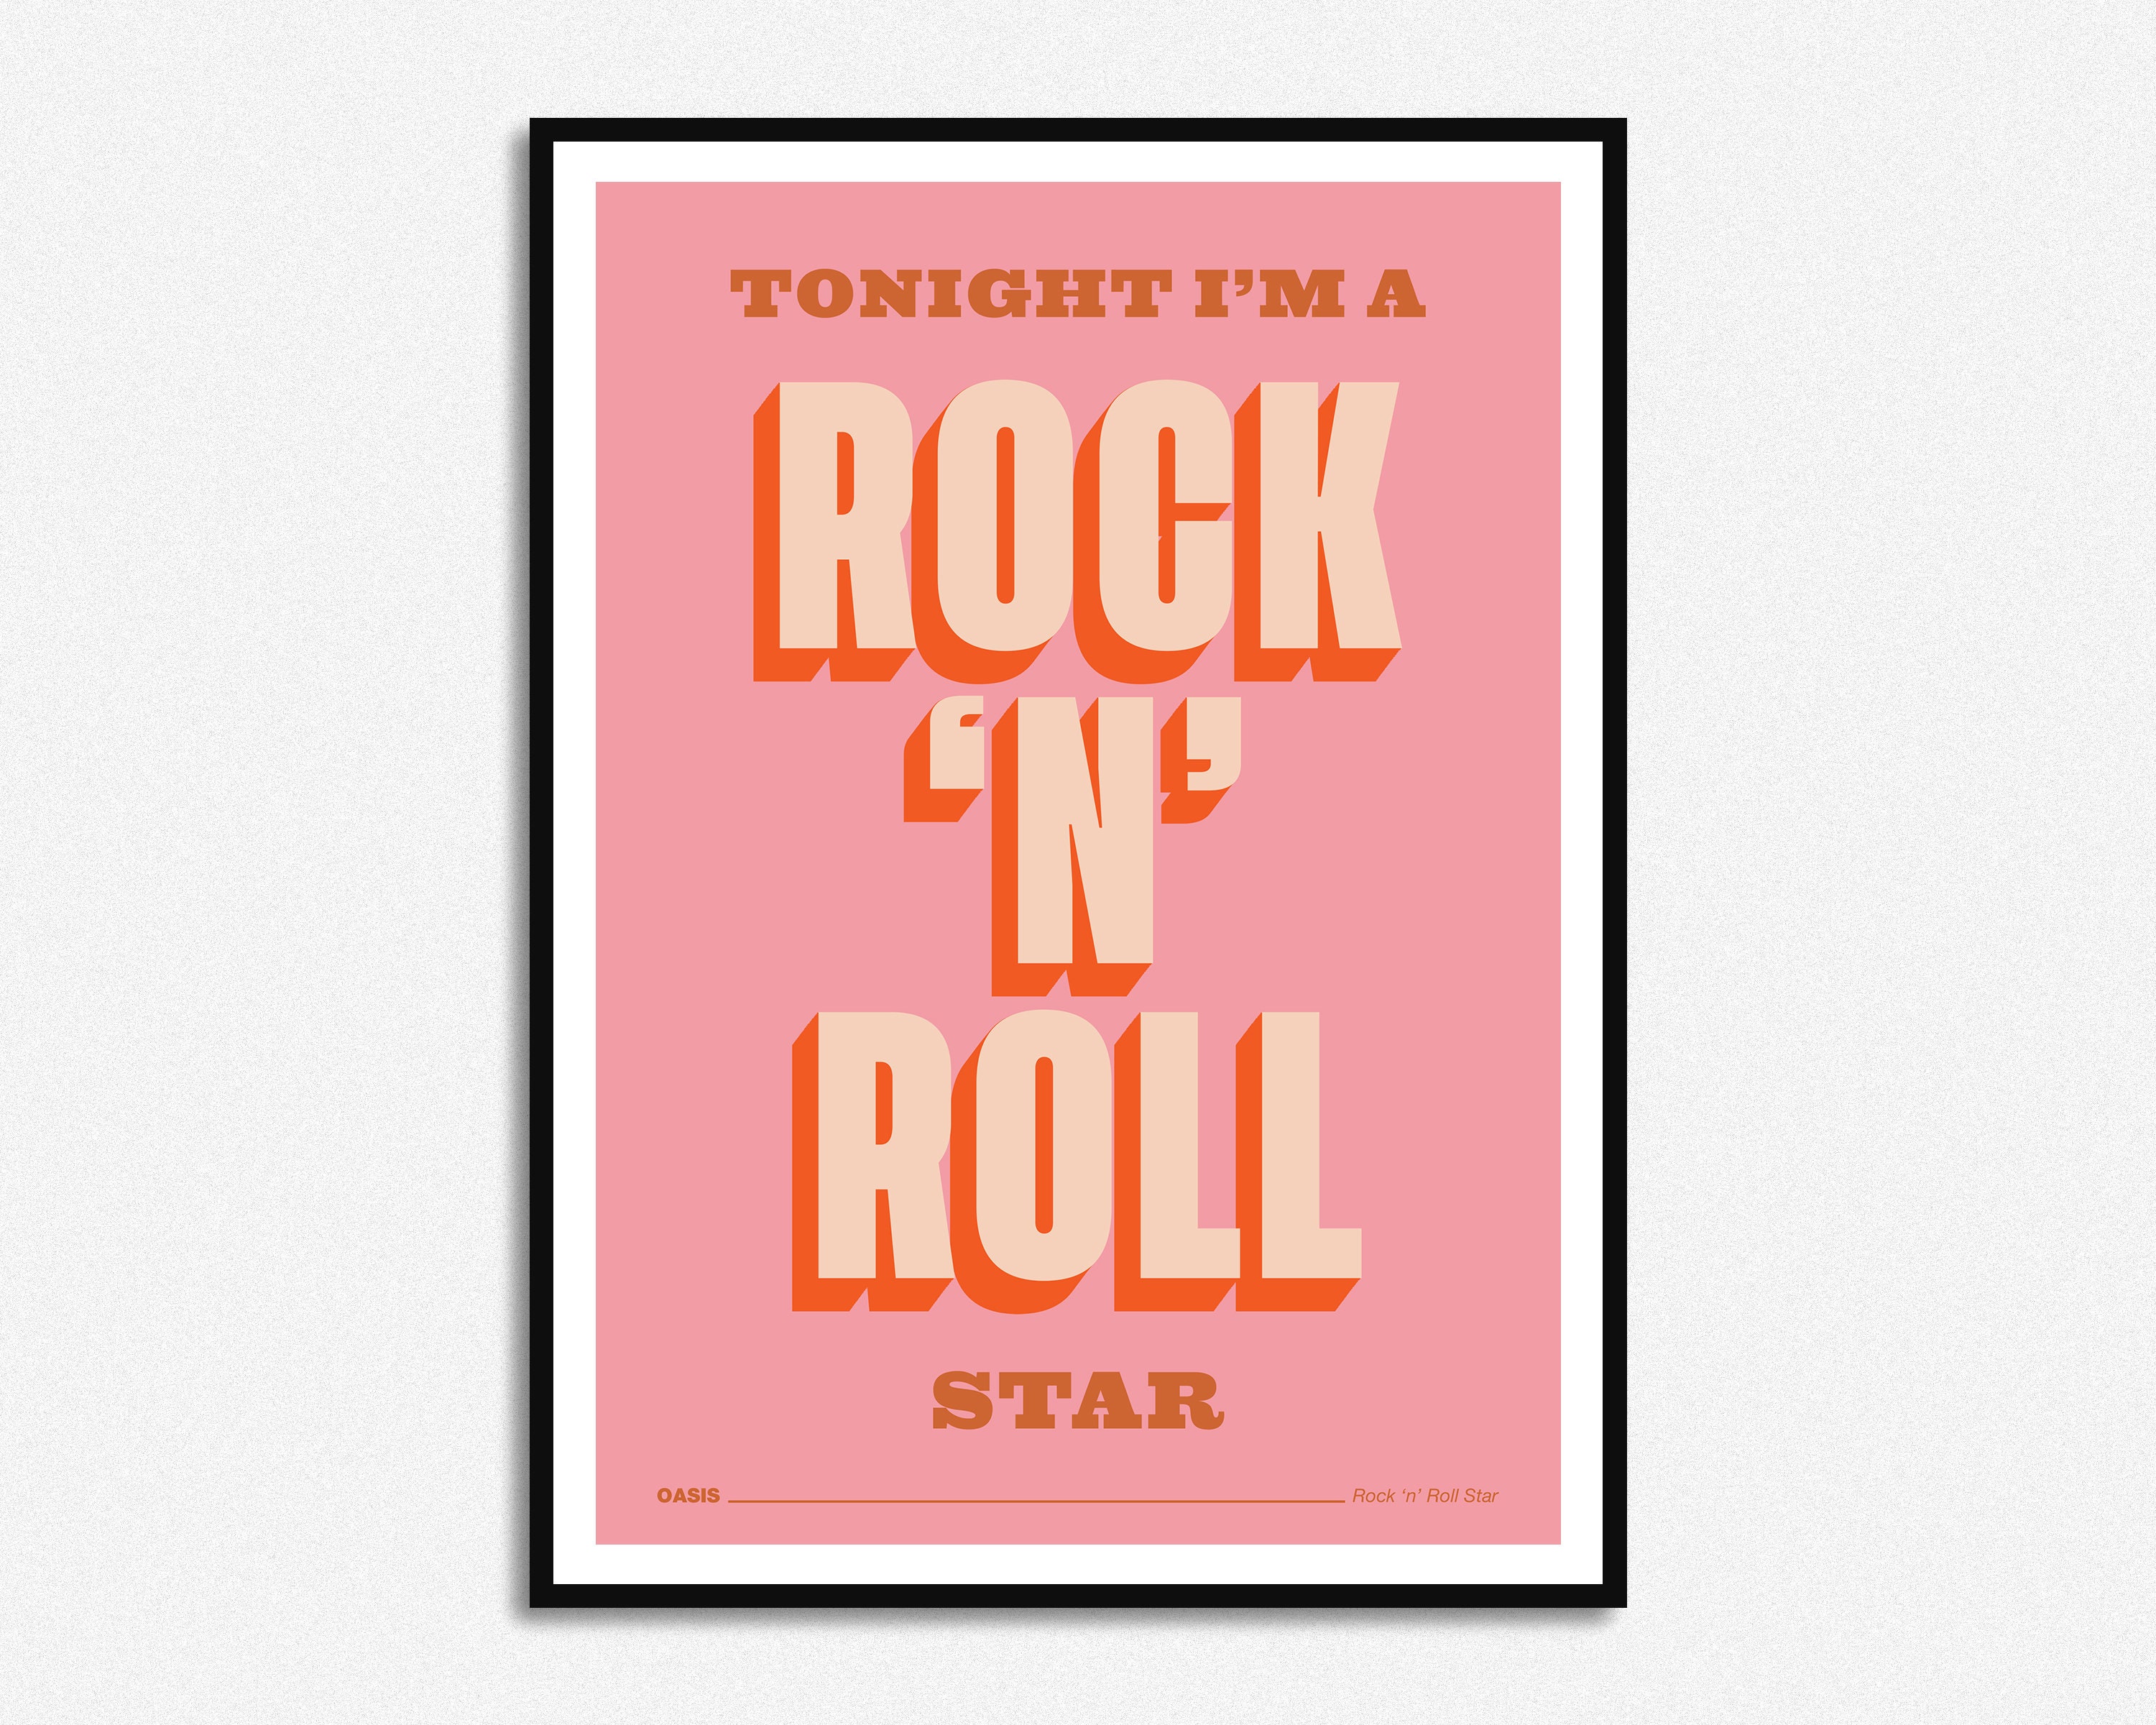 Rolling слова. Oasis Rock n Roll Star. Rock n Roll Star. Star Roll.